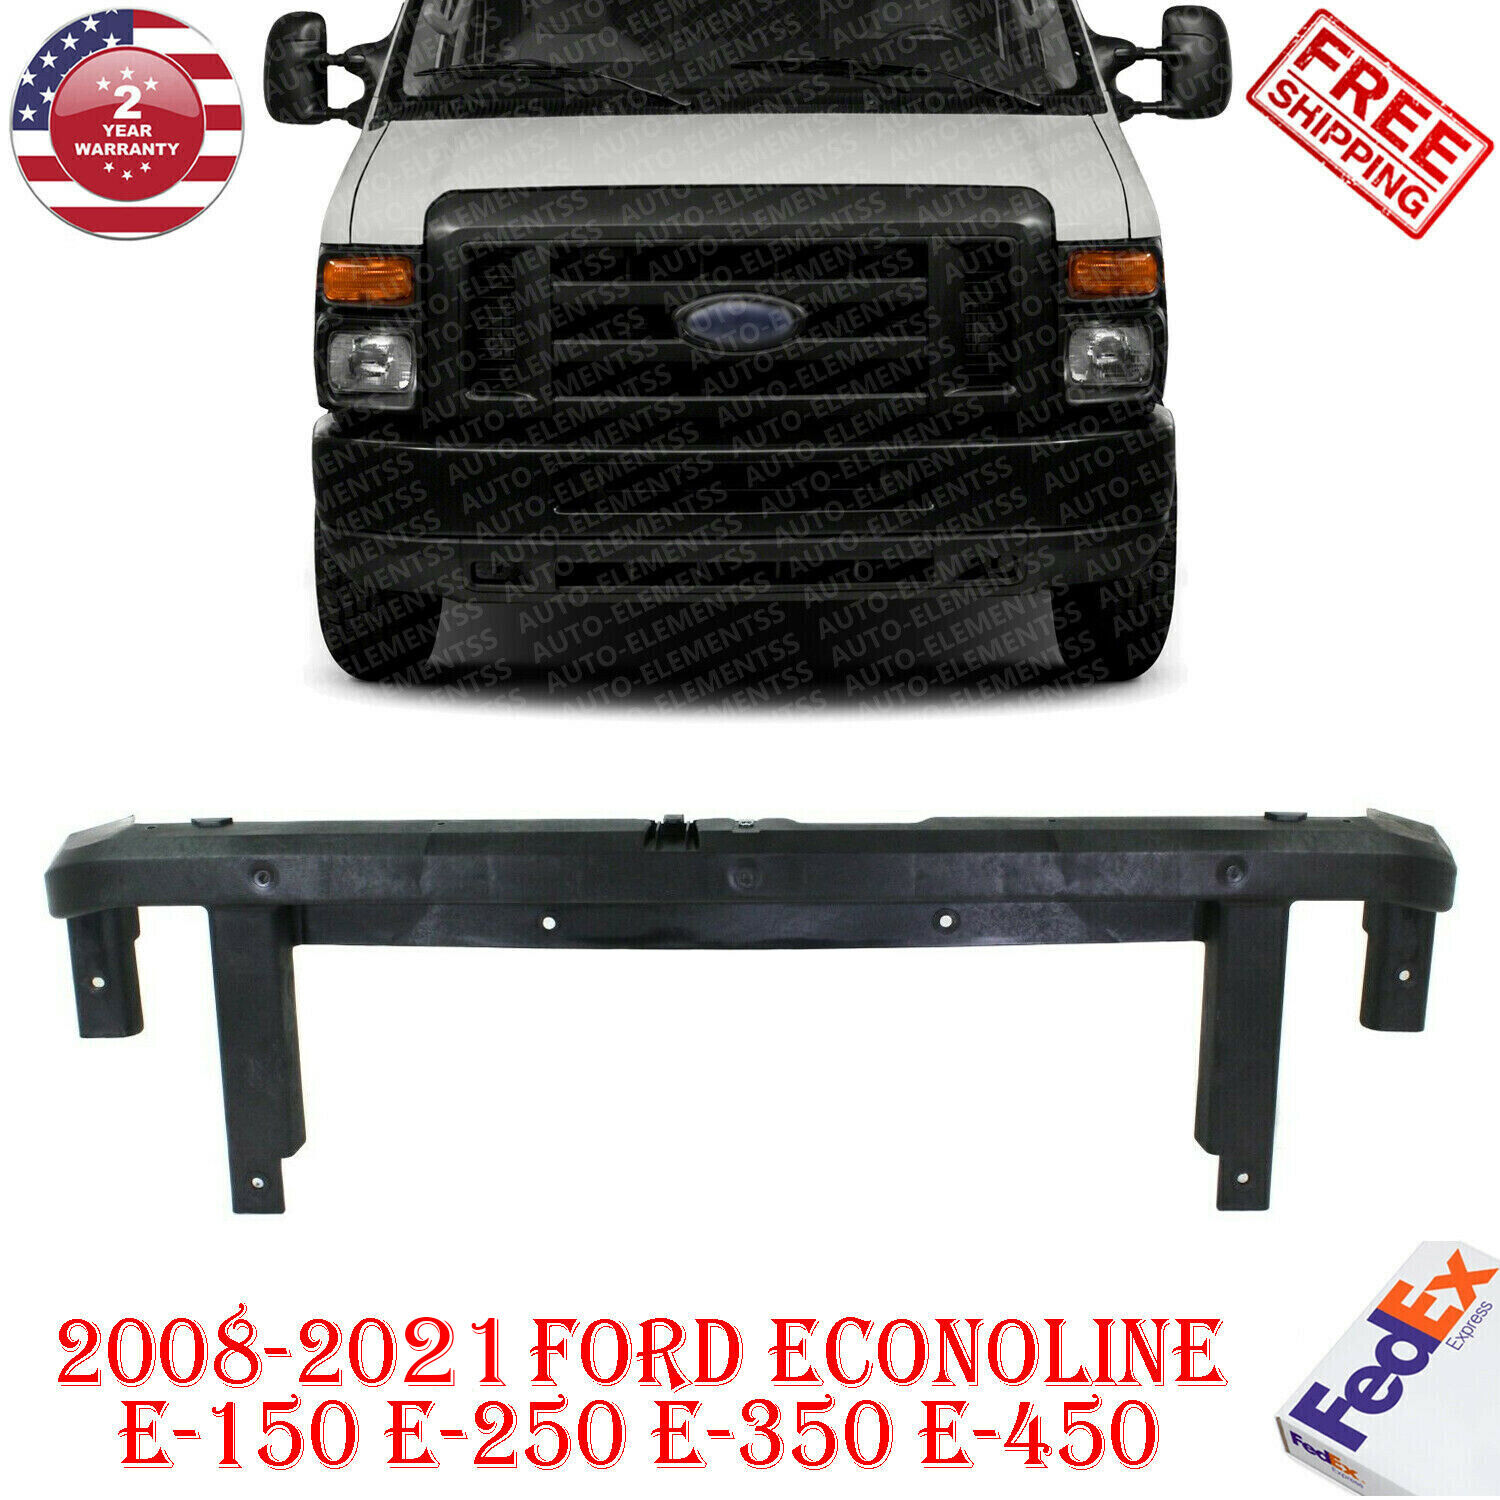 Header Panel Grille Support For 2008-2021 Ford Econoline E-150 E-250 E-350